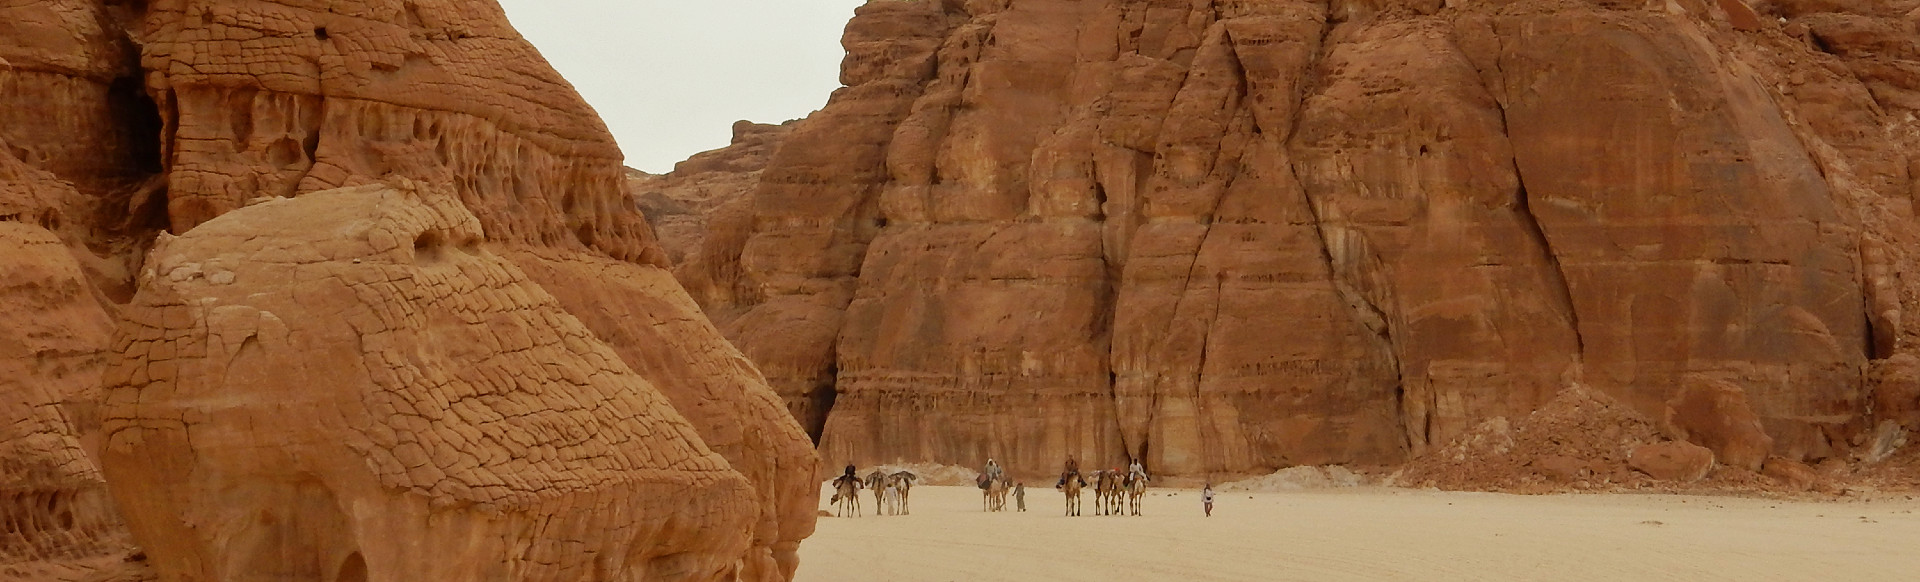 tussen twee zandstenen rotsformaties komt de karavaan van DesertJoy